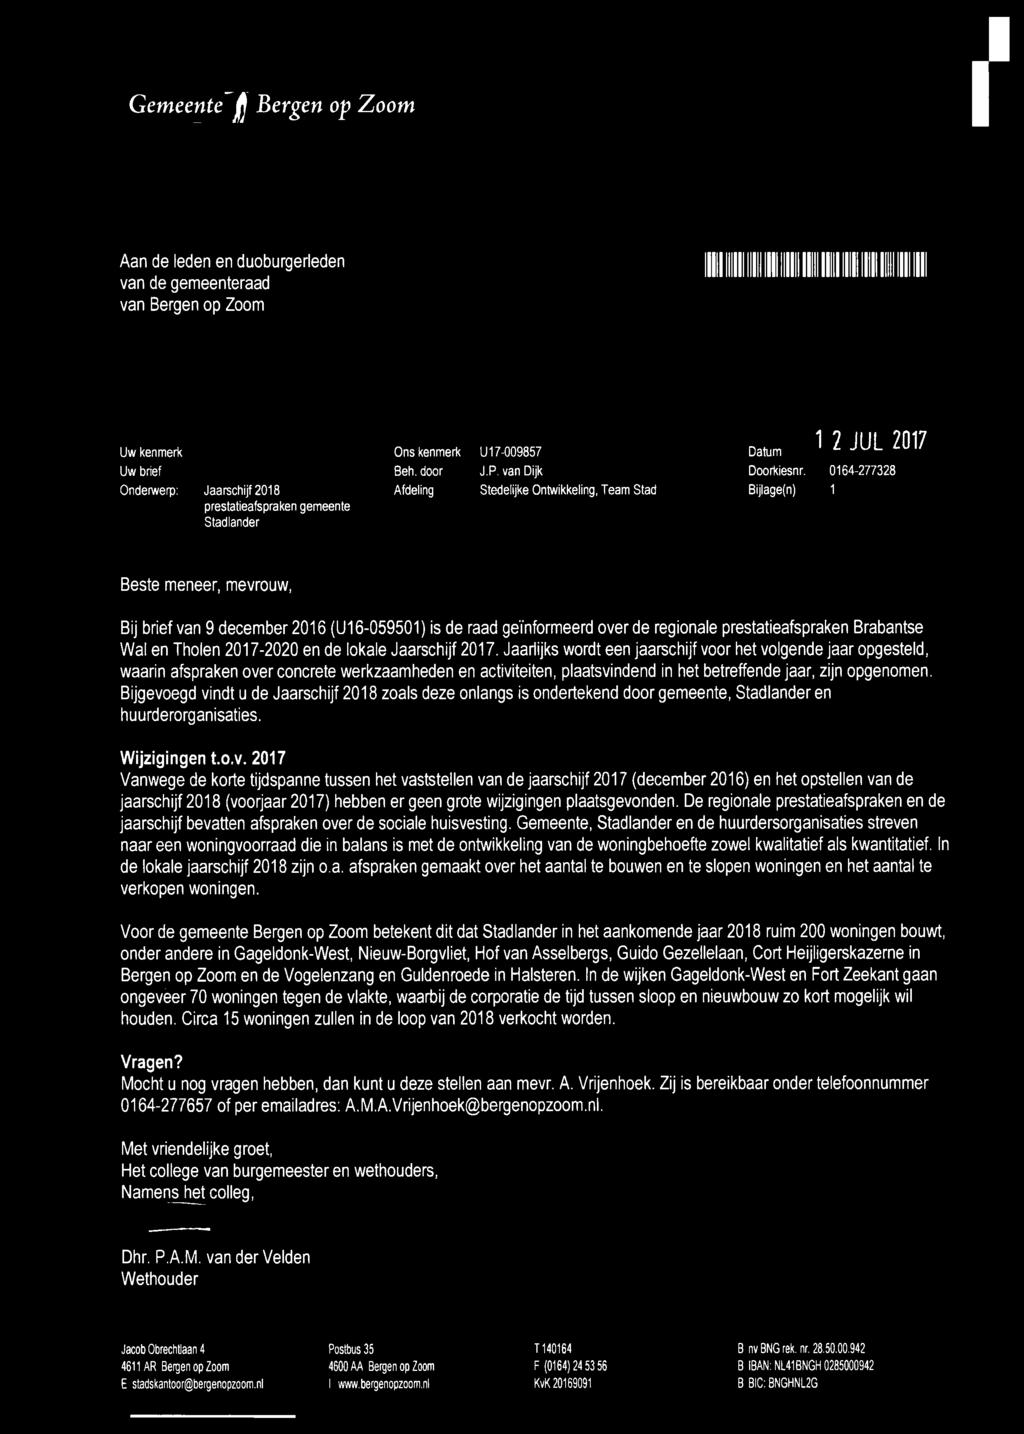 0164-277328 Bijlage(n) 1 Beste meneer, mevrouw, Bij brief van 9 december 2016 (U16-059501) is de raad geïnformeerd over de regionale prestatieafspraken Brabantse Wal en Tholen 2017-2020 en de lokale